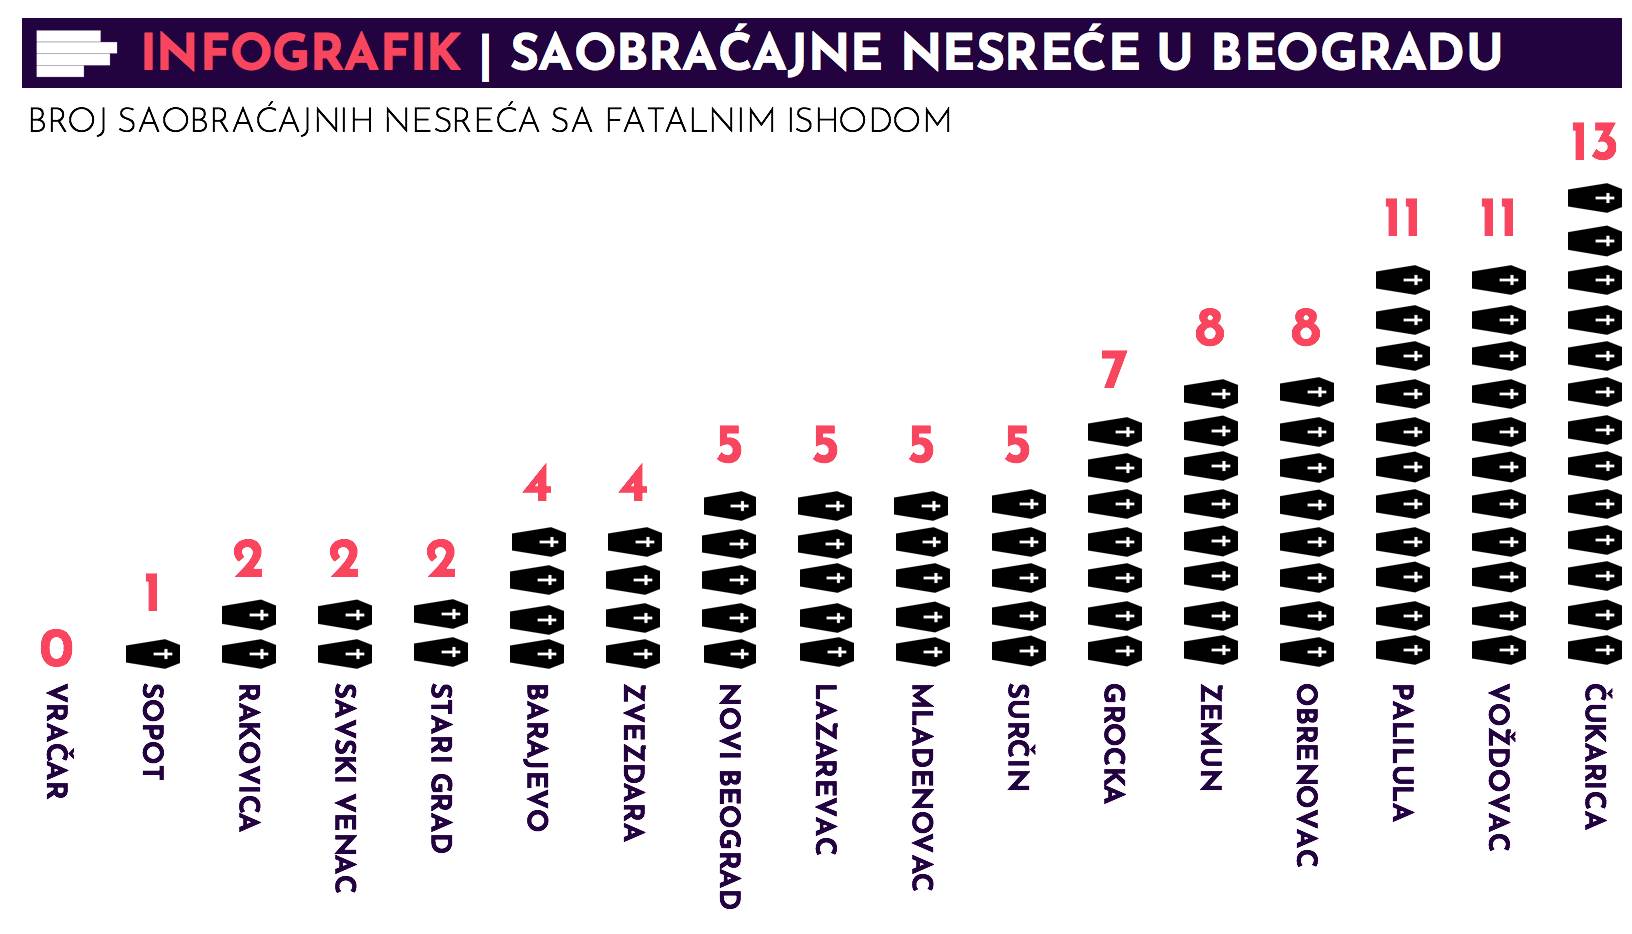  Beograd: Saobraćajne nesreće, statistika 